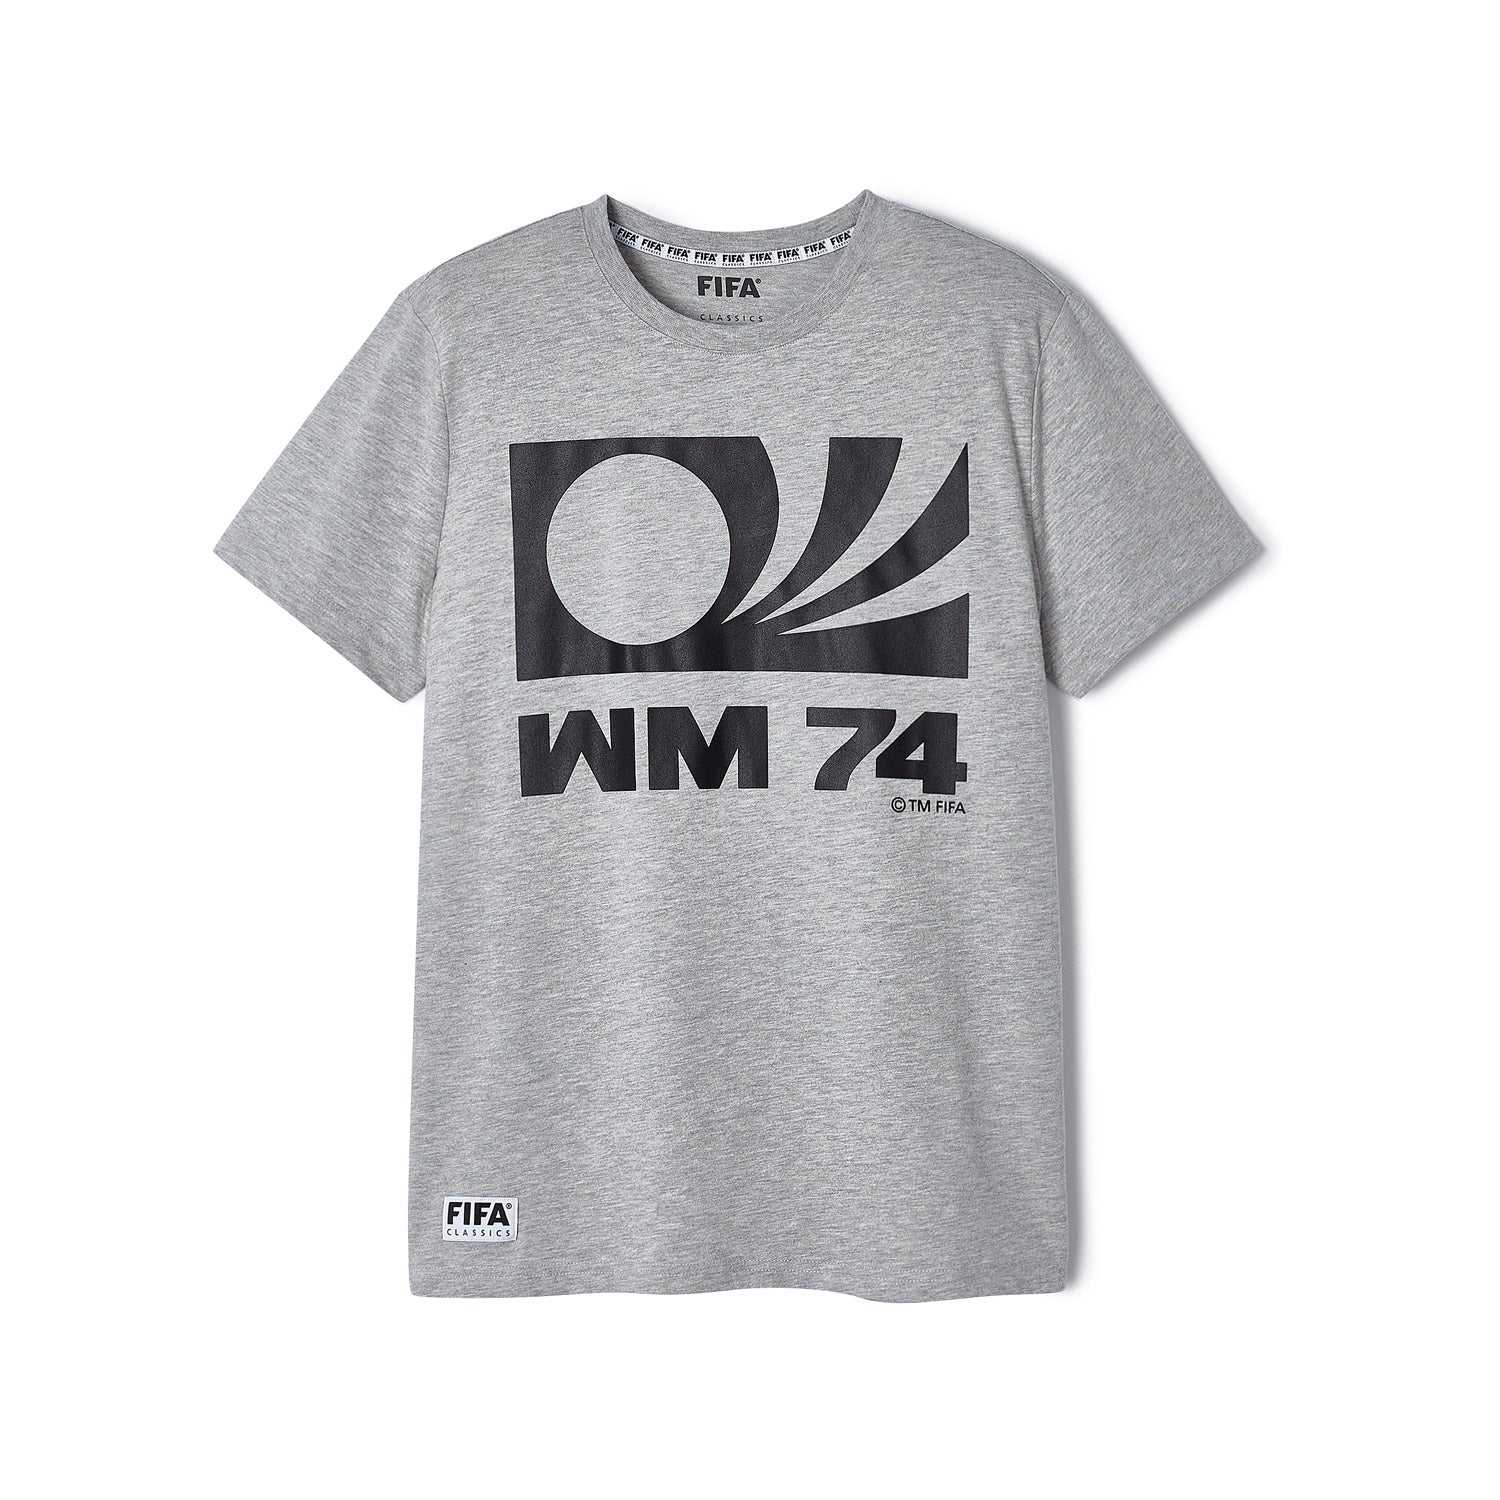 FIFA Rewind Germany '74 Emblem T-Shirt - Mens